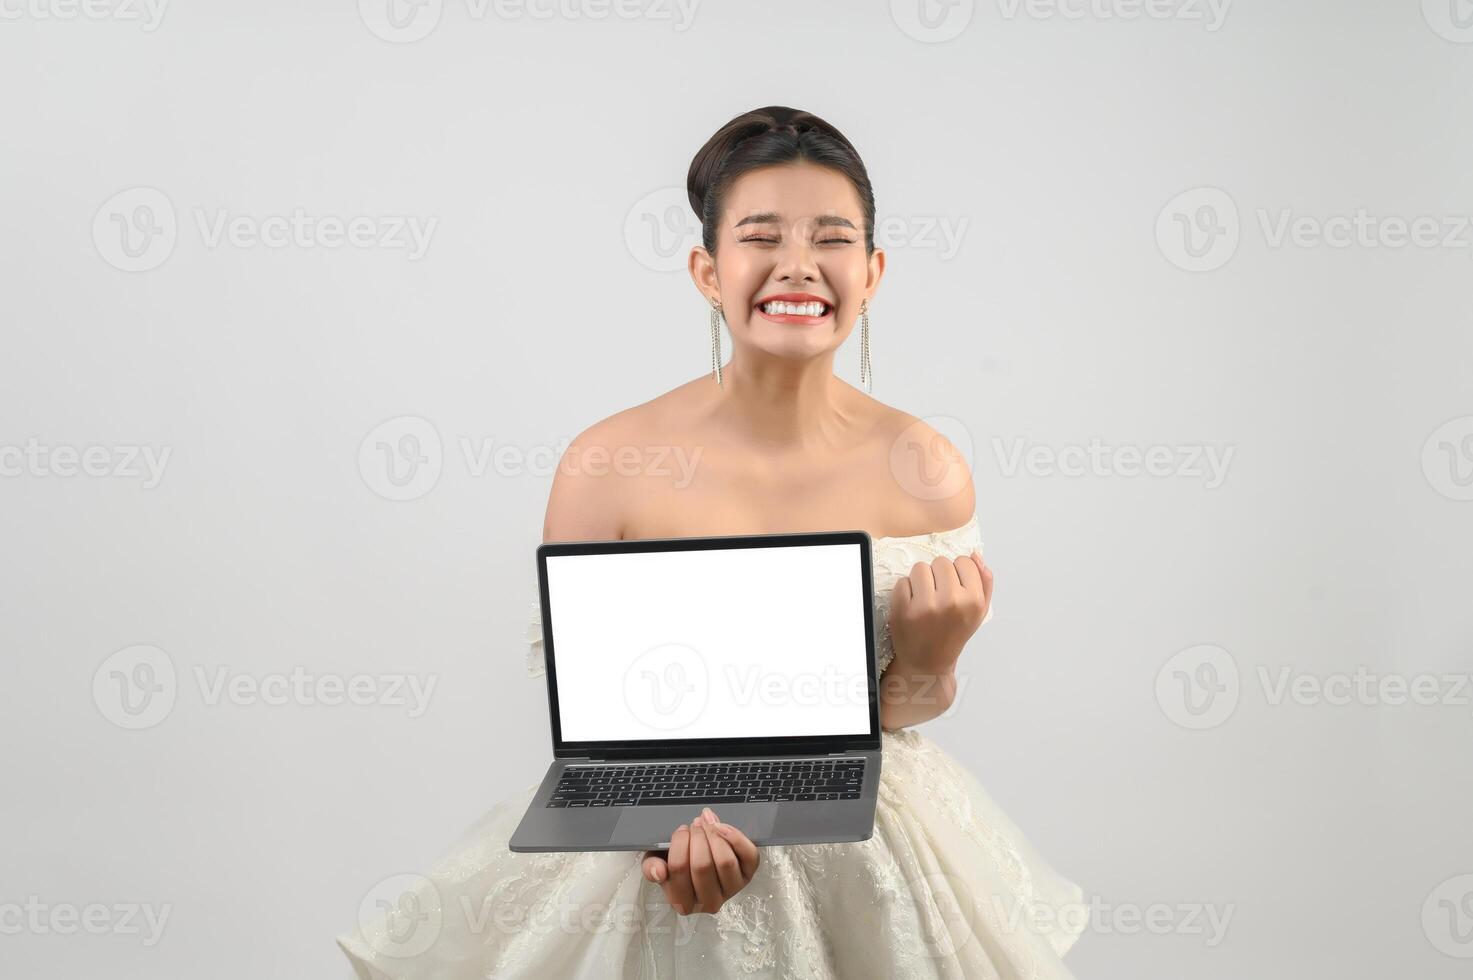 Una joven novia asiática hermosa posa con una computadora portátil de maqueta en la mano foto